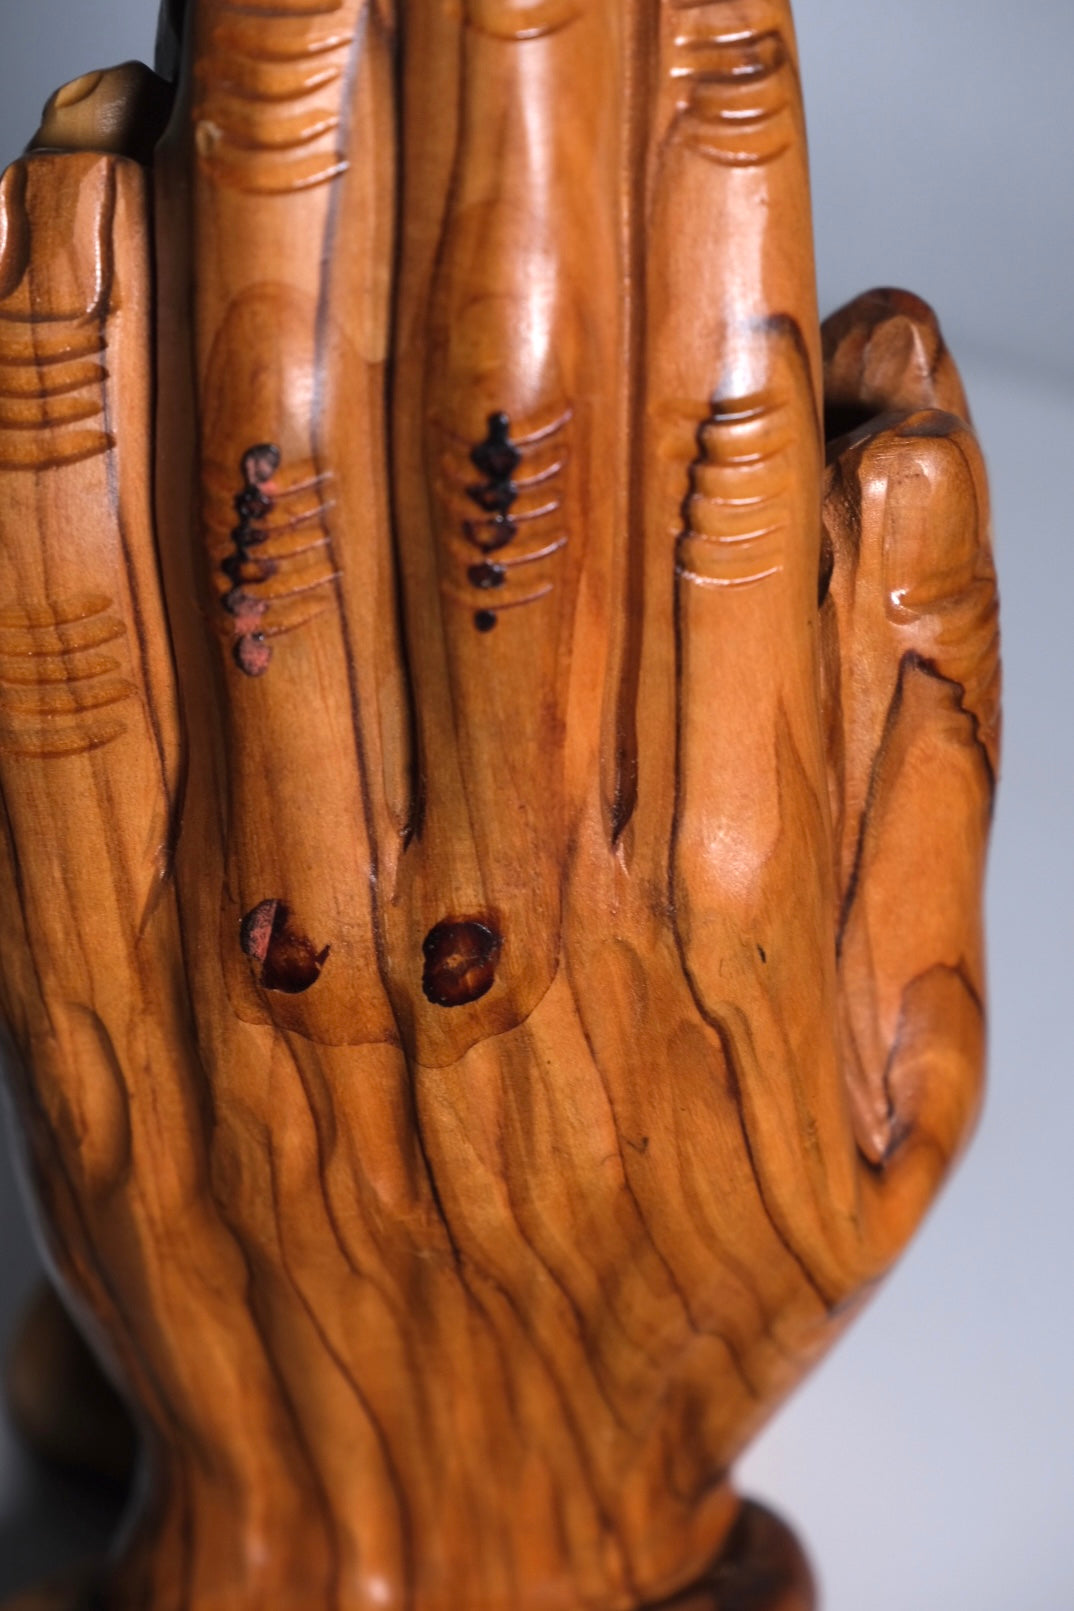 Olive Wood Carving Praying Hands (Vintage)